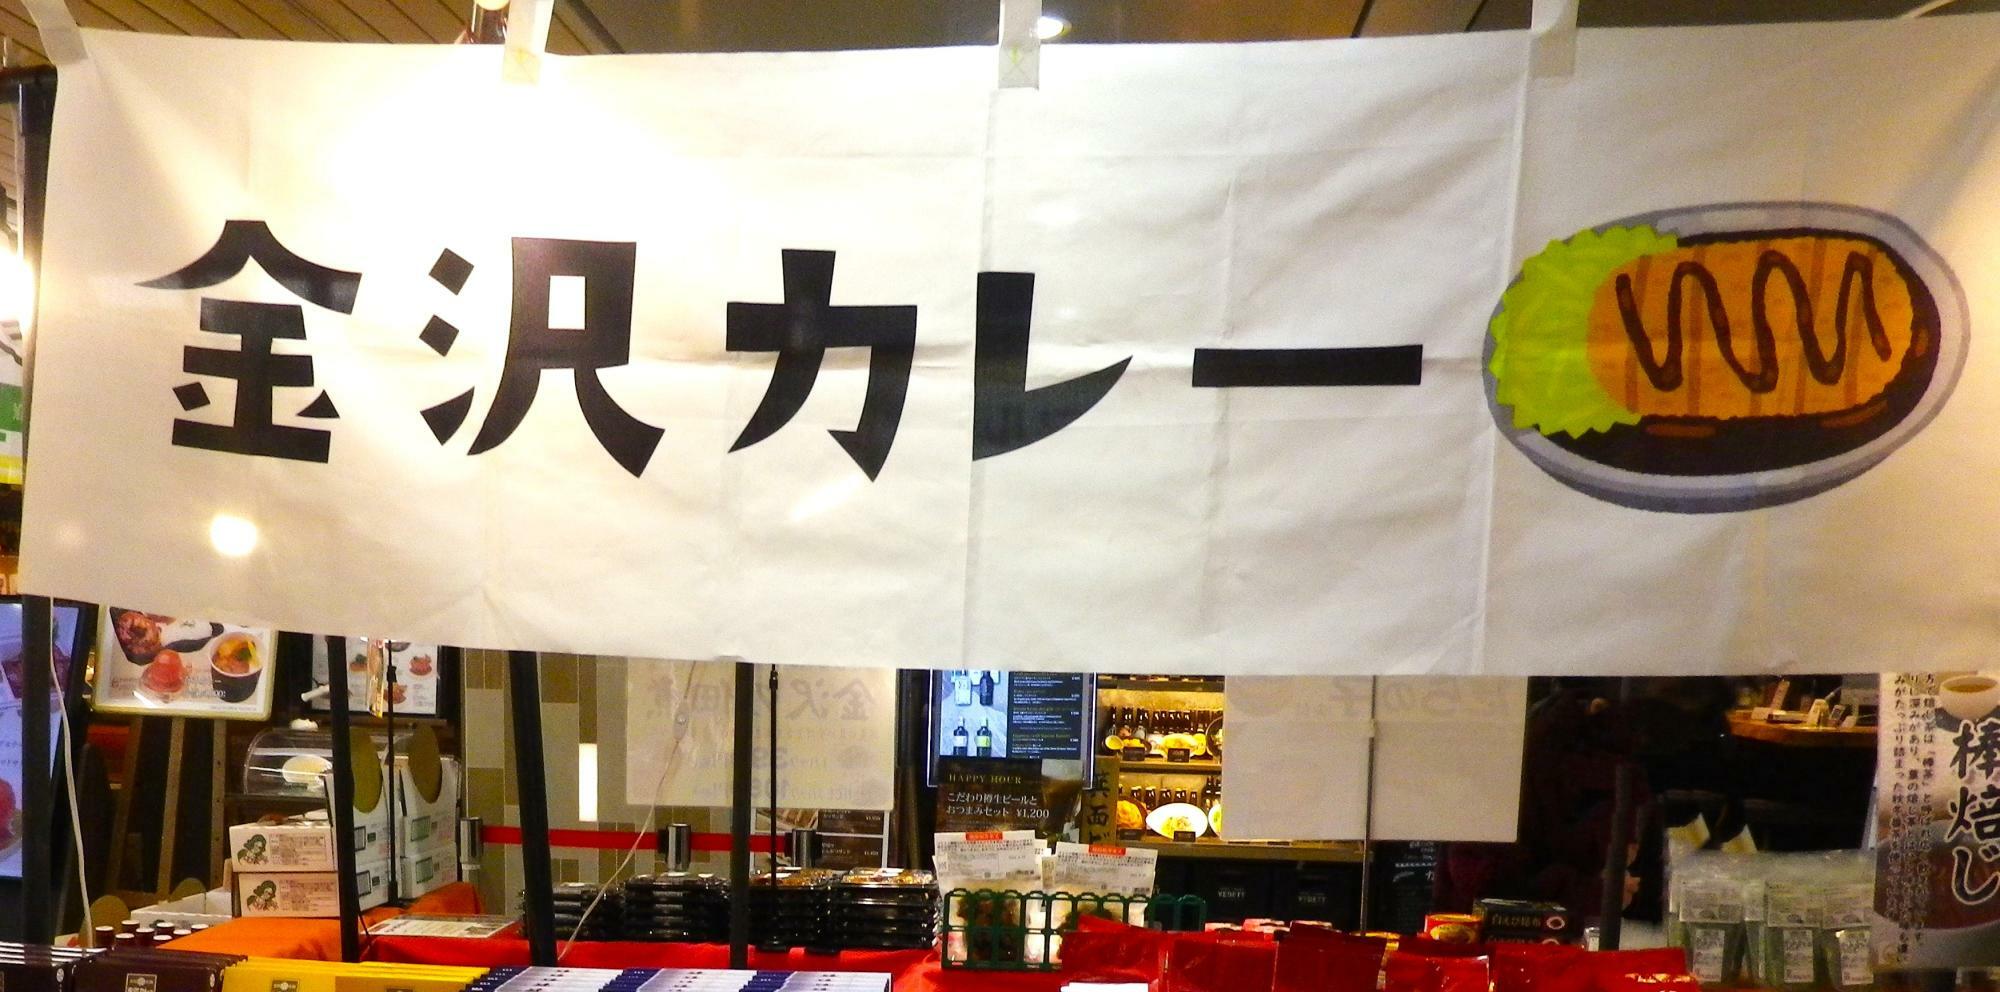 可愛いデザインの「金沢カレー」の垂れ幕。